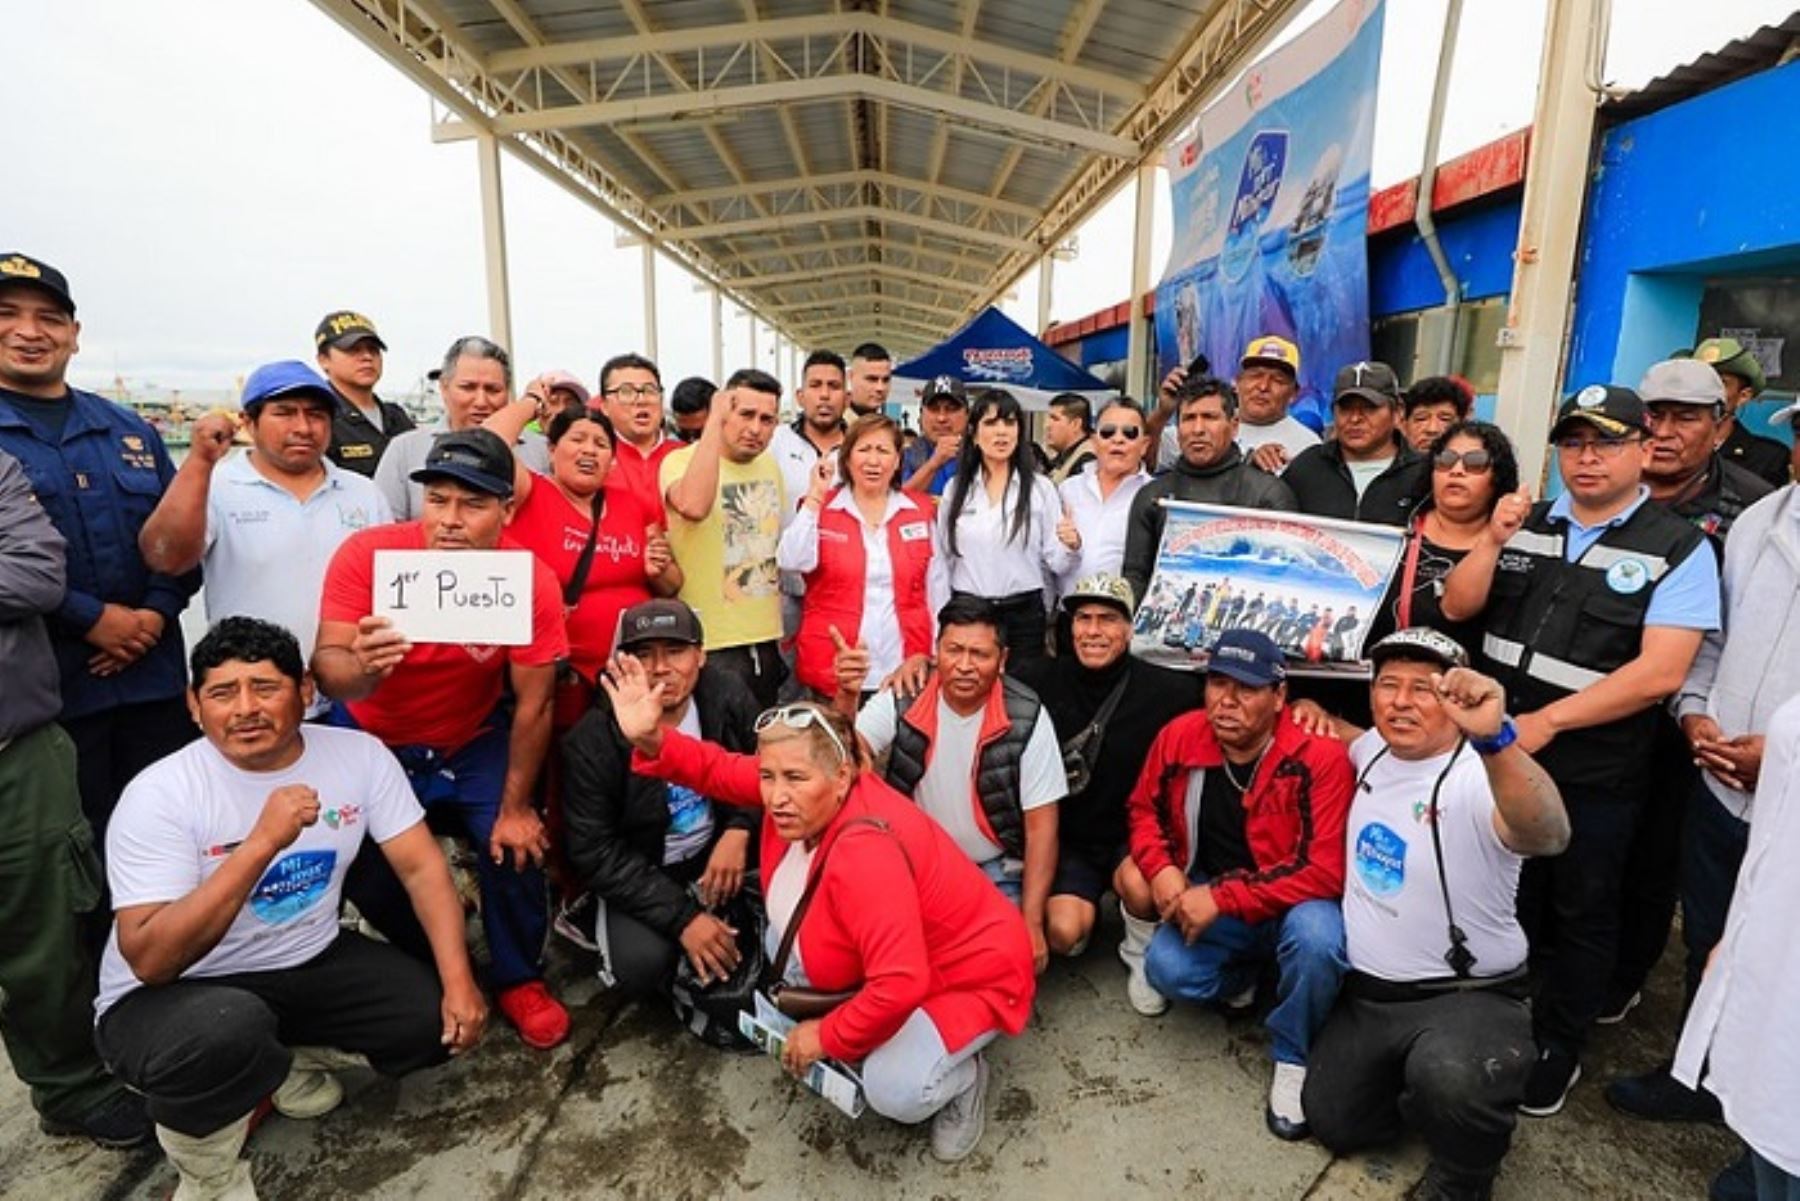 Campaña "Mi mar, mi hogar" se realizó en el Desembarcadero Pesquero Artesanal de San Andrés, ubicado en Pisco.